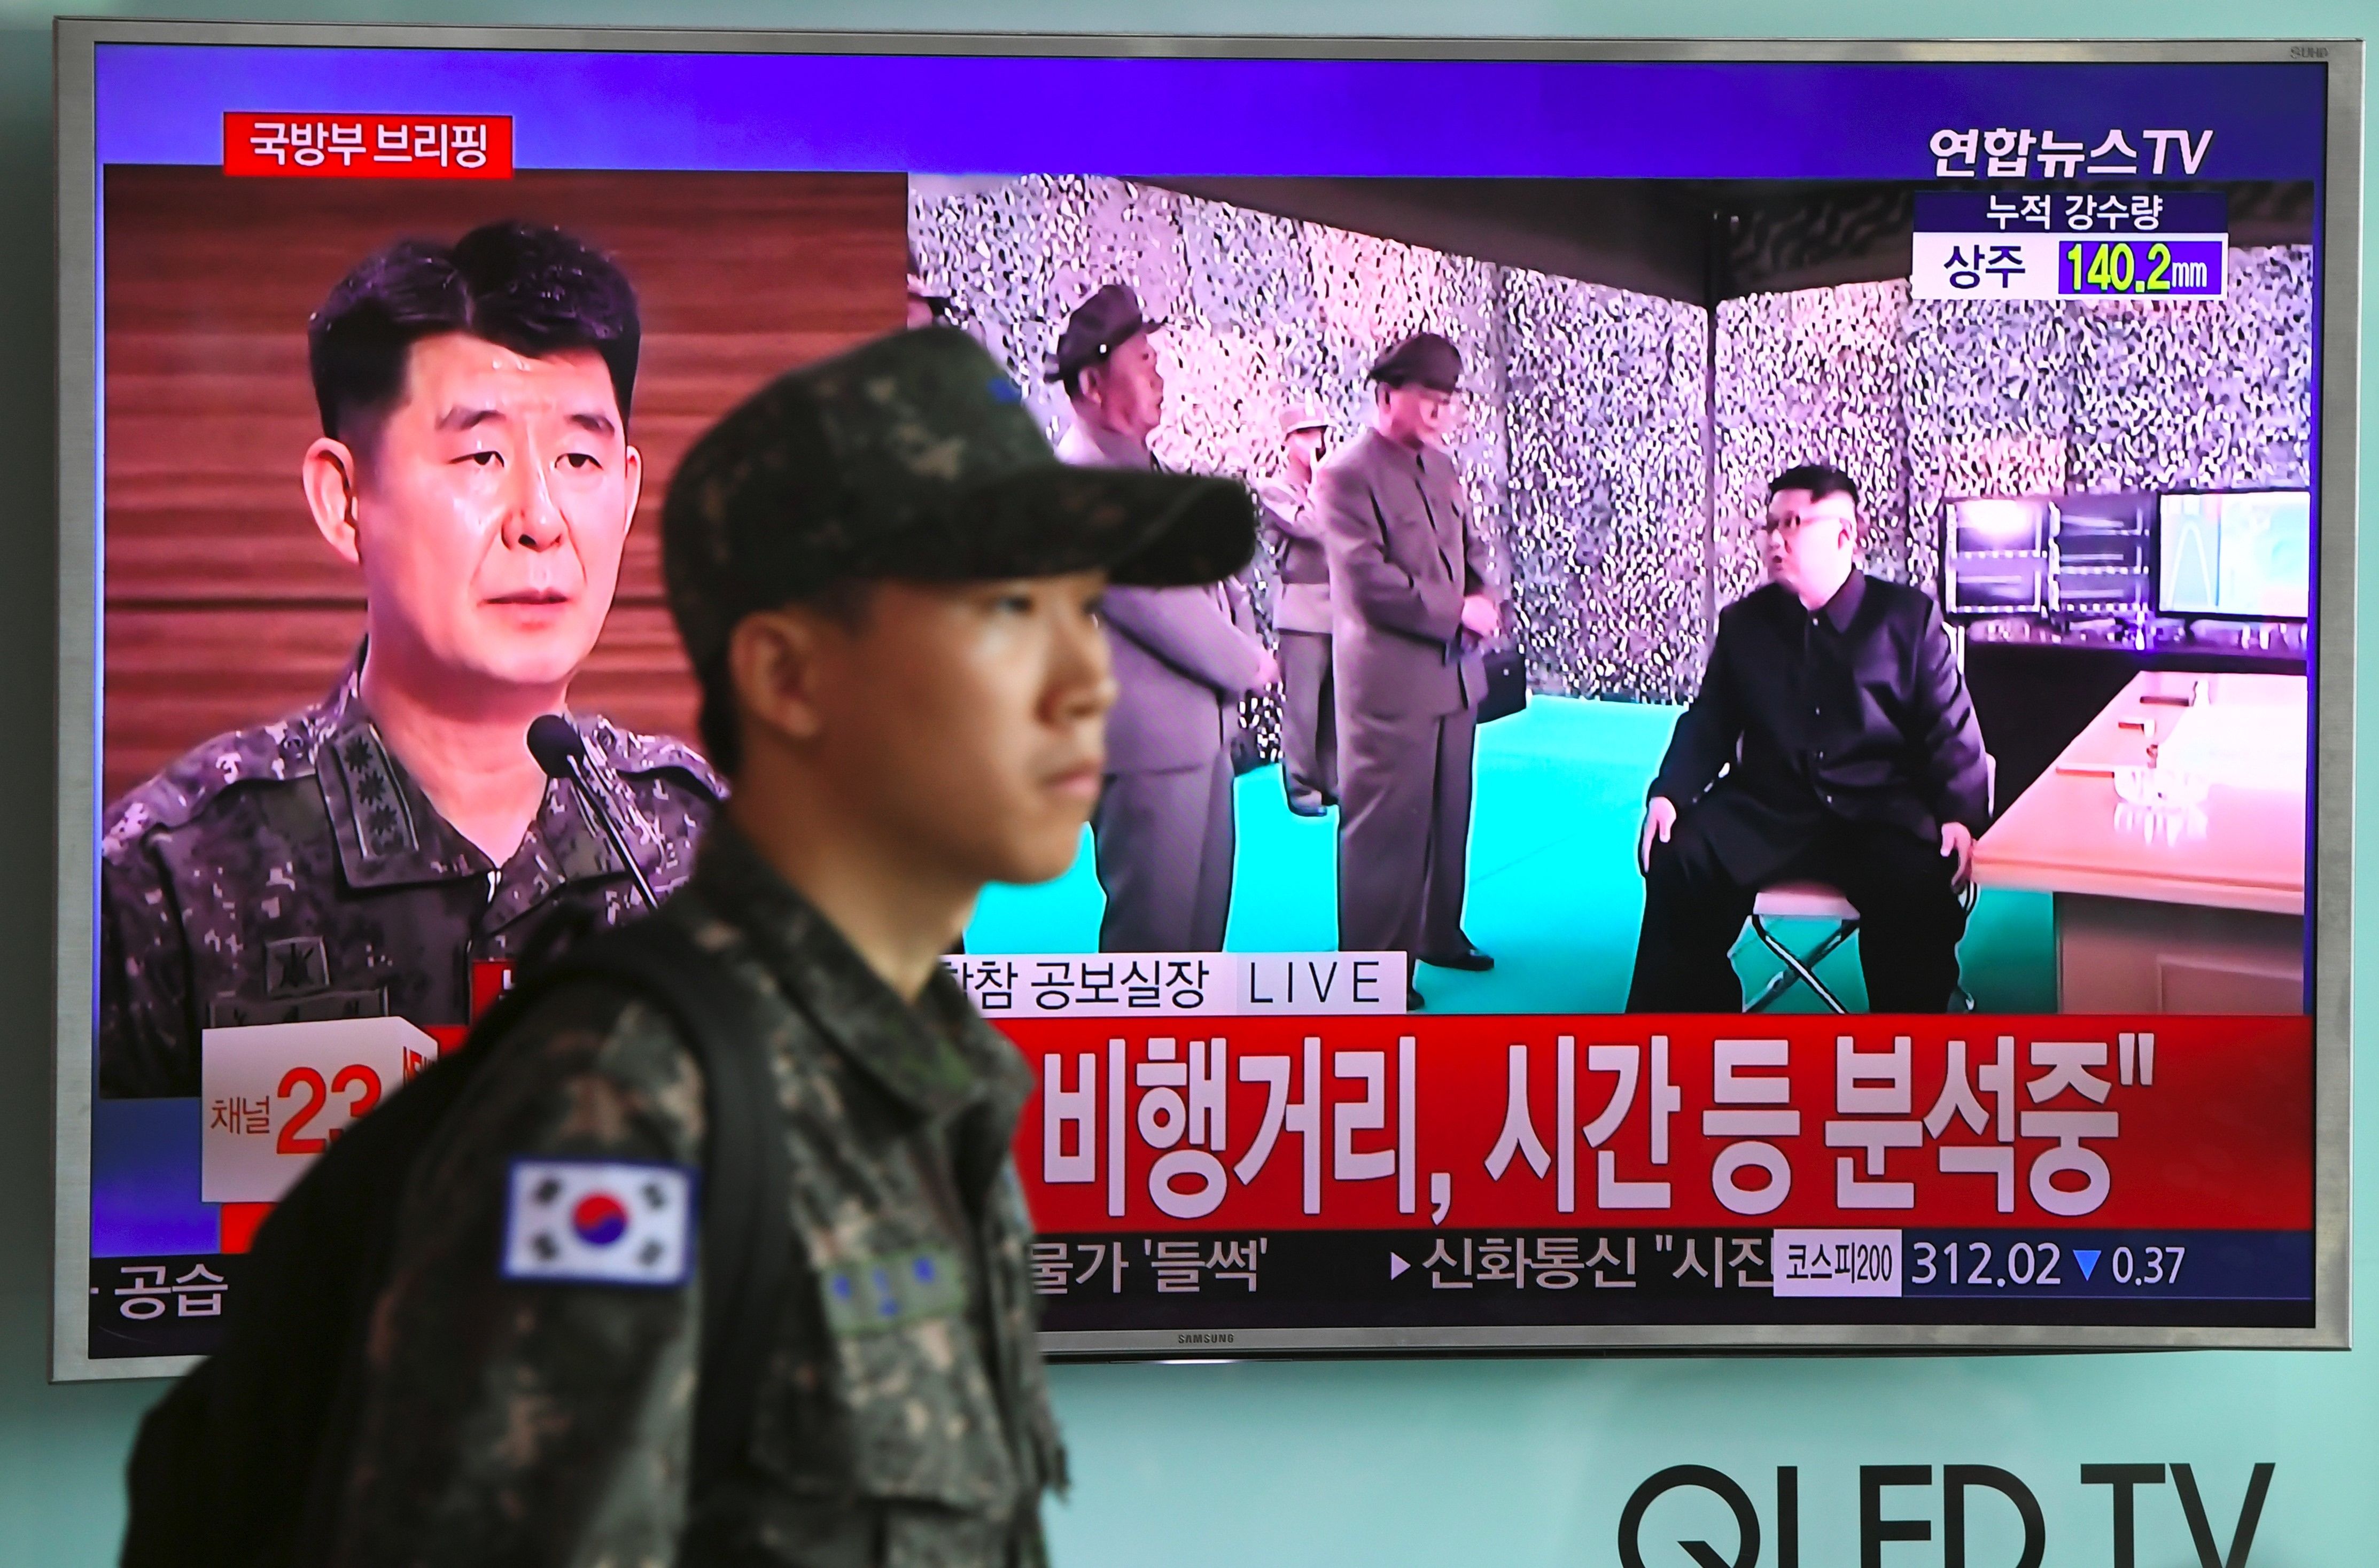 زعيم كوريا الشمالية يشرف على إطلاق الصاروخ